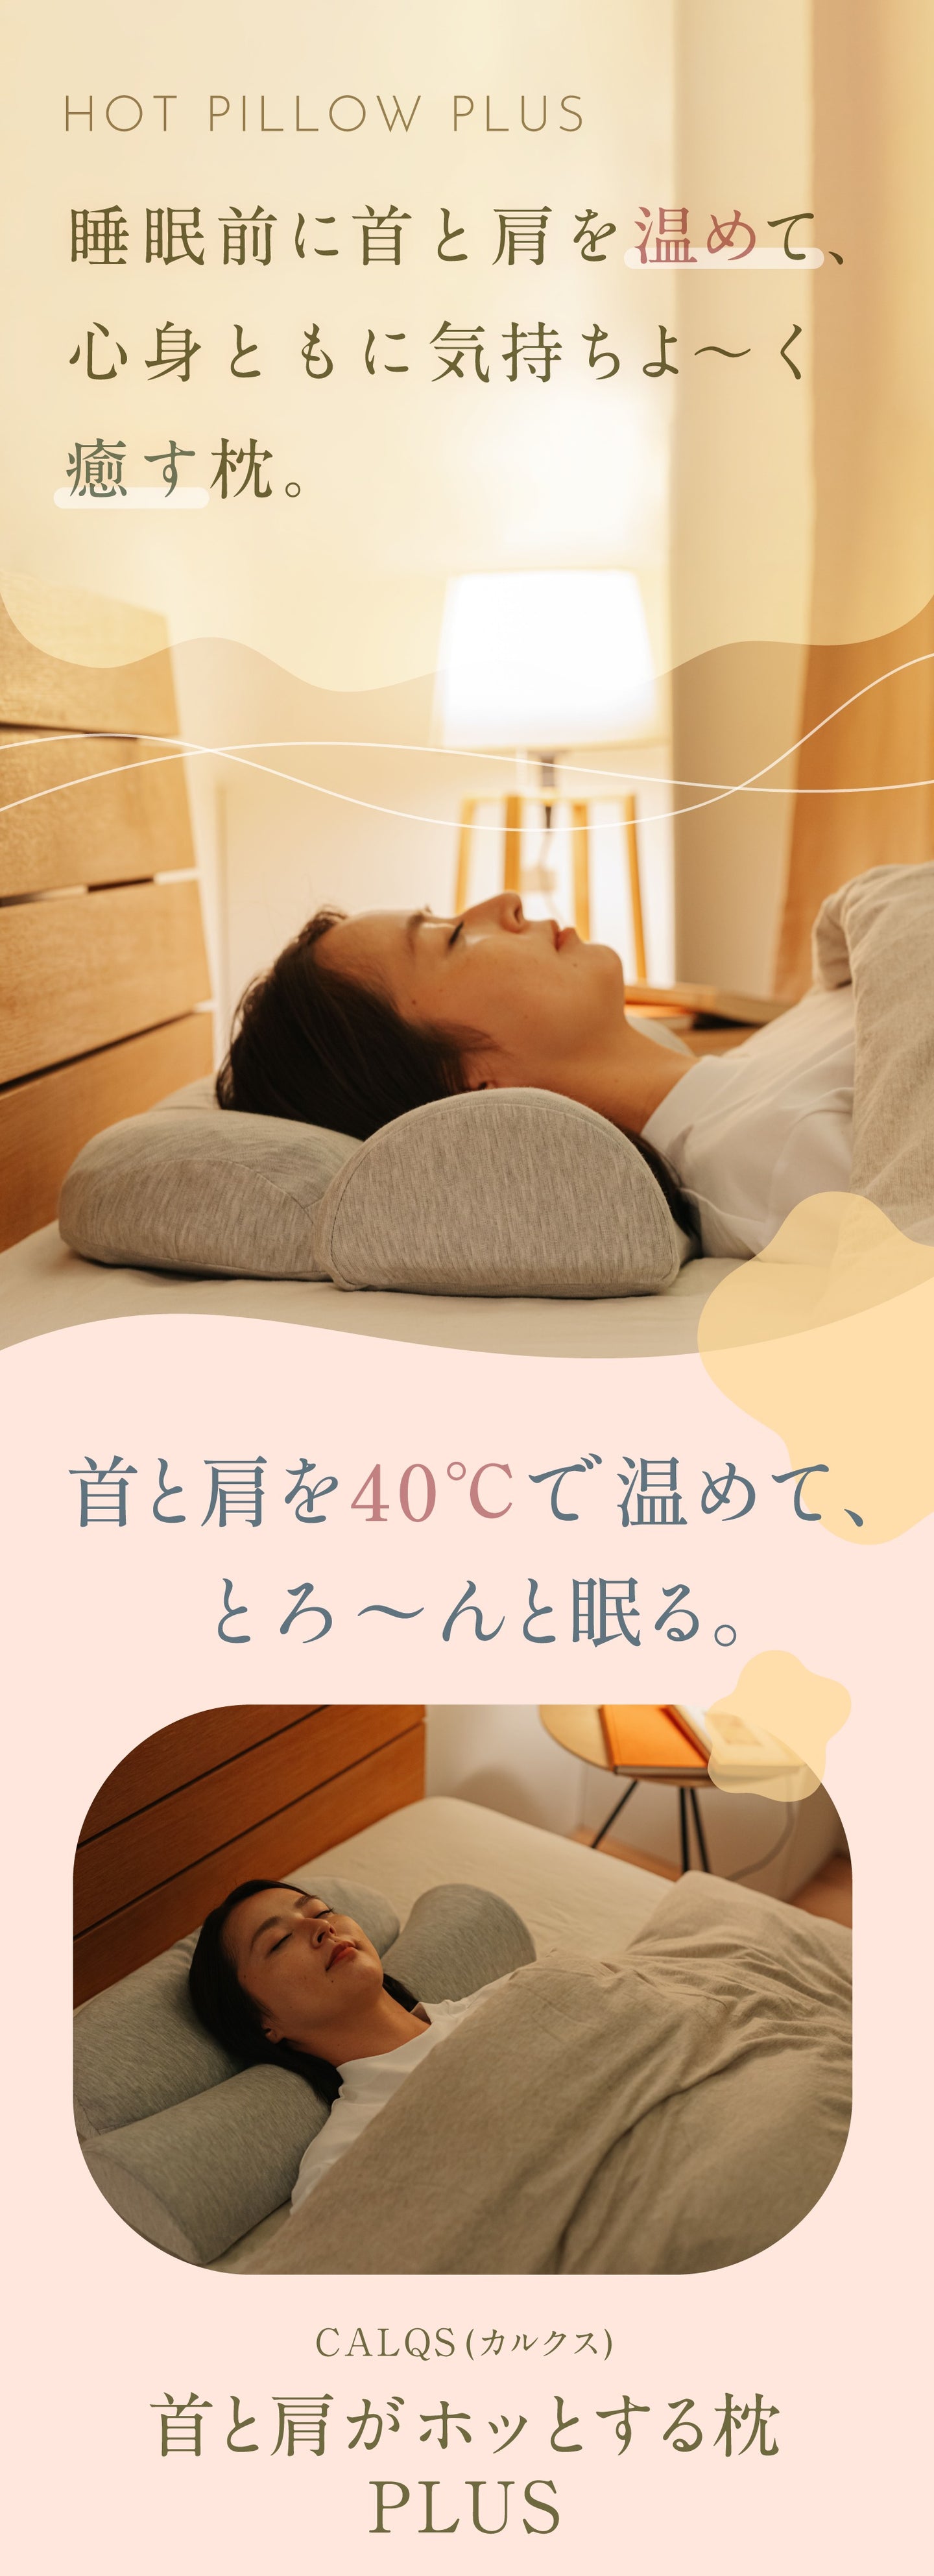 首と肩がホッとする枕PLUS | 首と肩を40度で15分間温めることで心地よい睡眠を手に入れる為のホットまくら